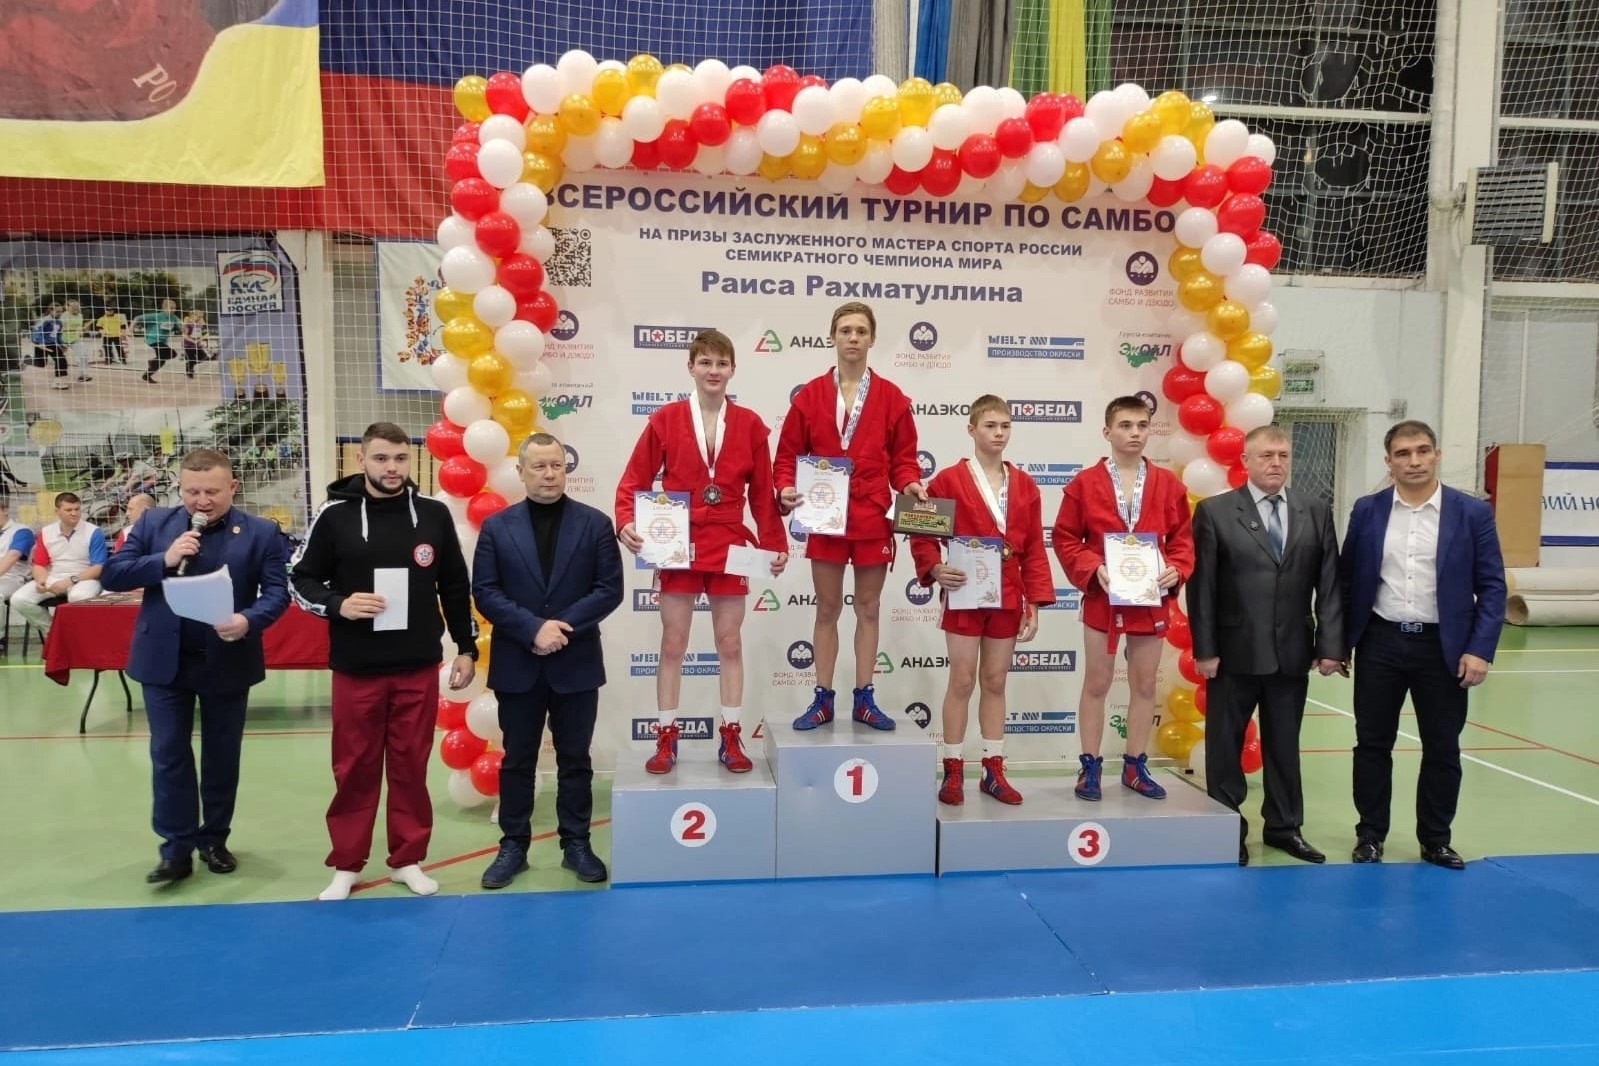 Девятов, Михеев и Шашкин выиграли комплект медалей по самбо